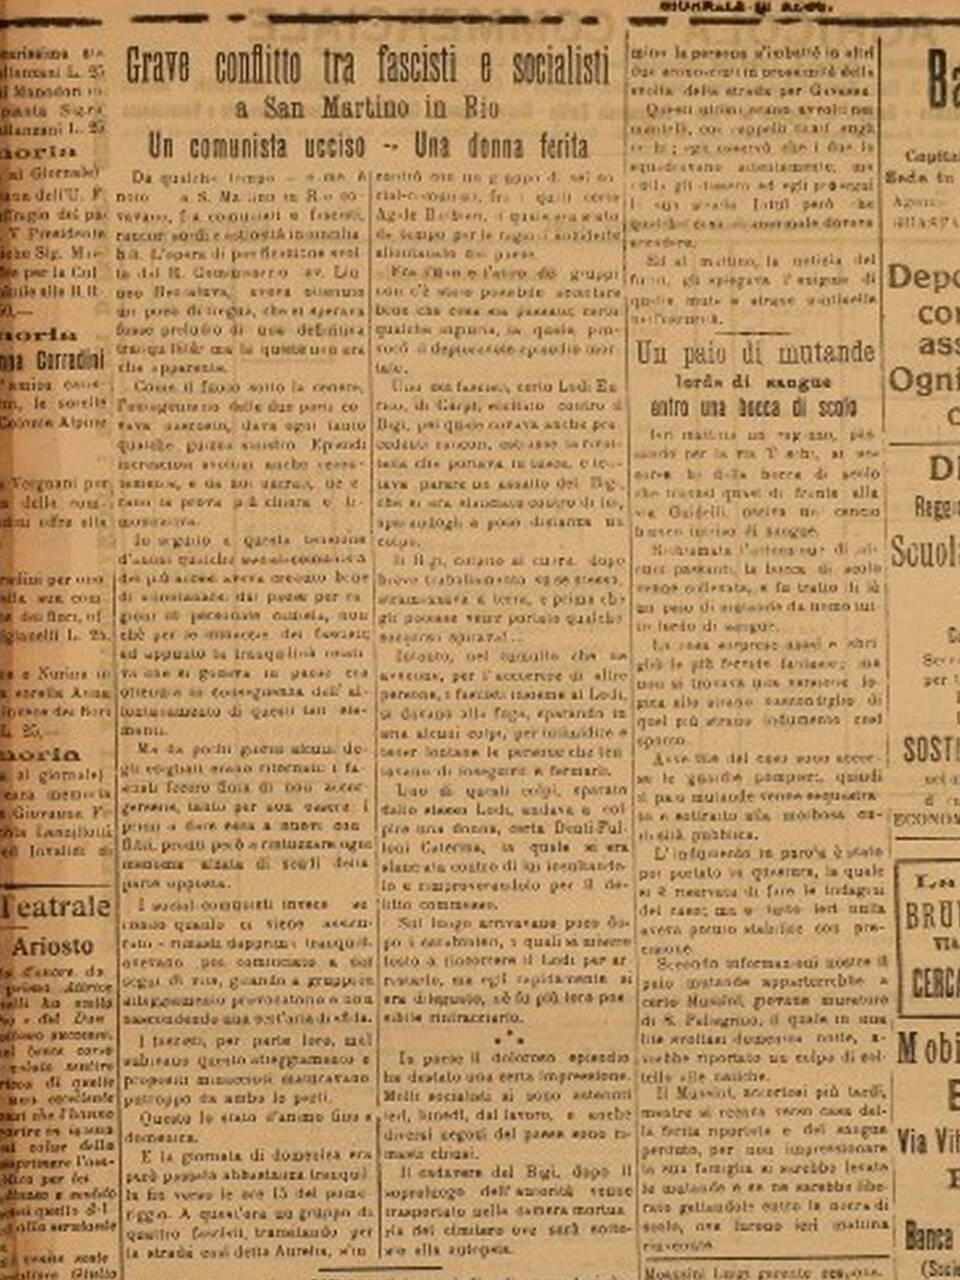 giornale di reggio 15 novembre 1921